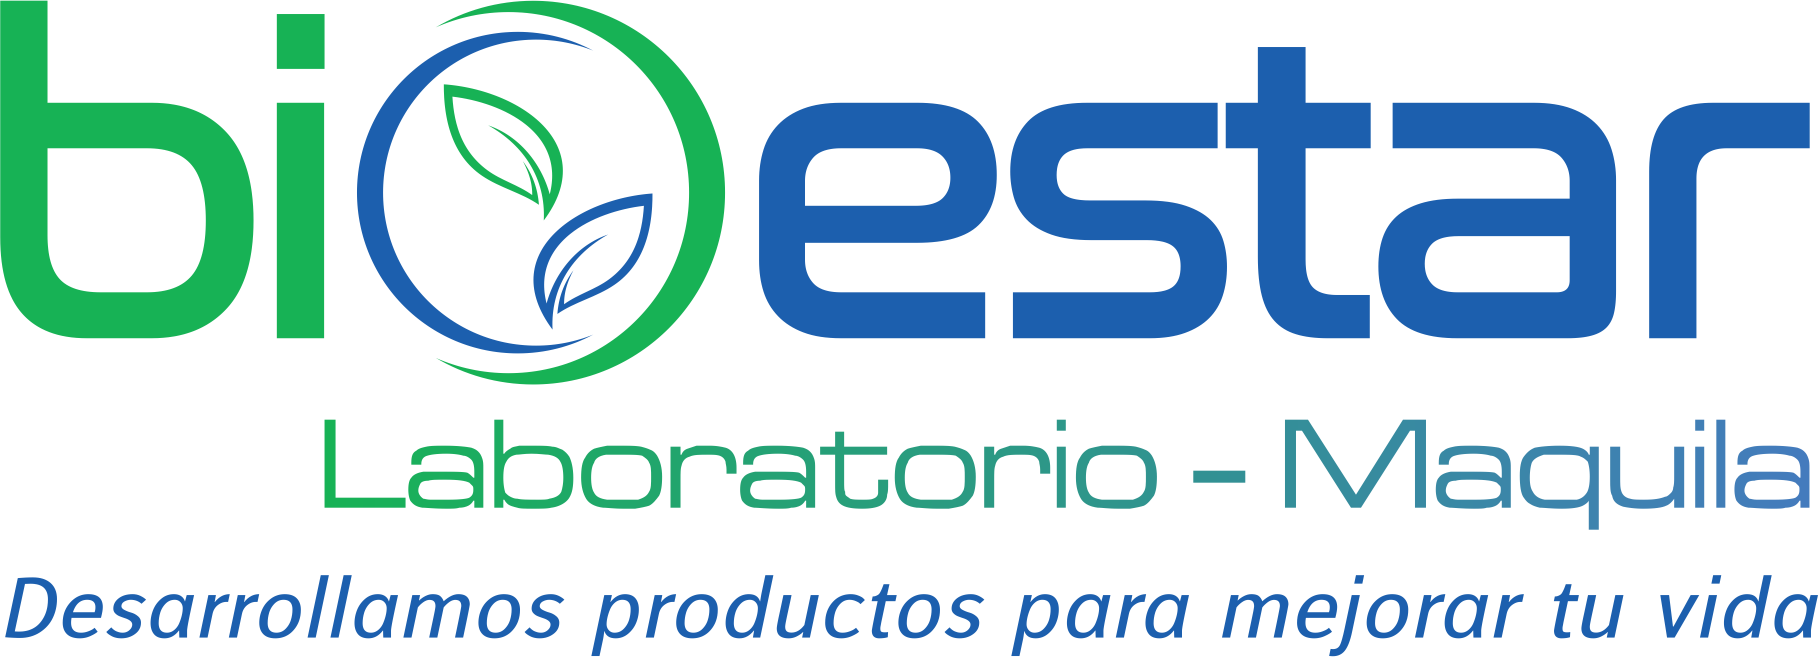 logo bioestar-maquila_v1